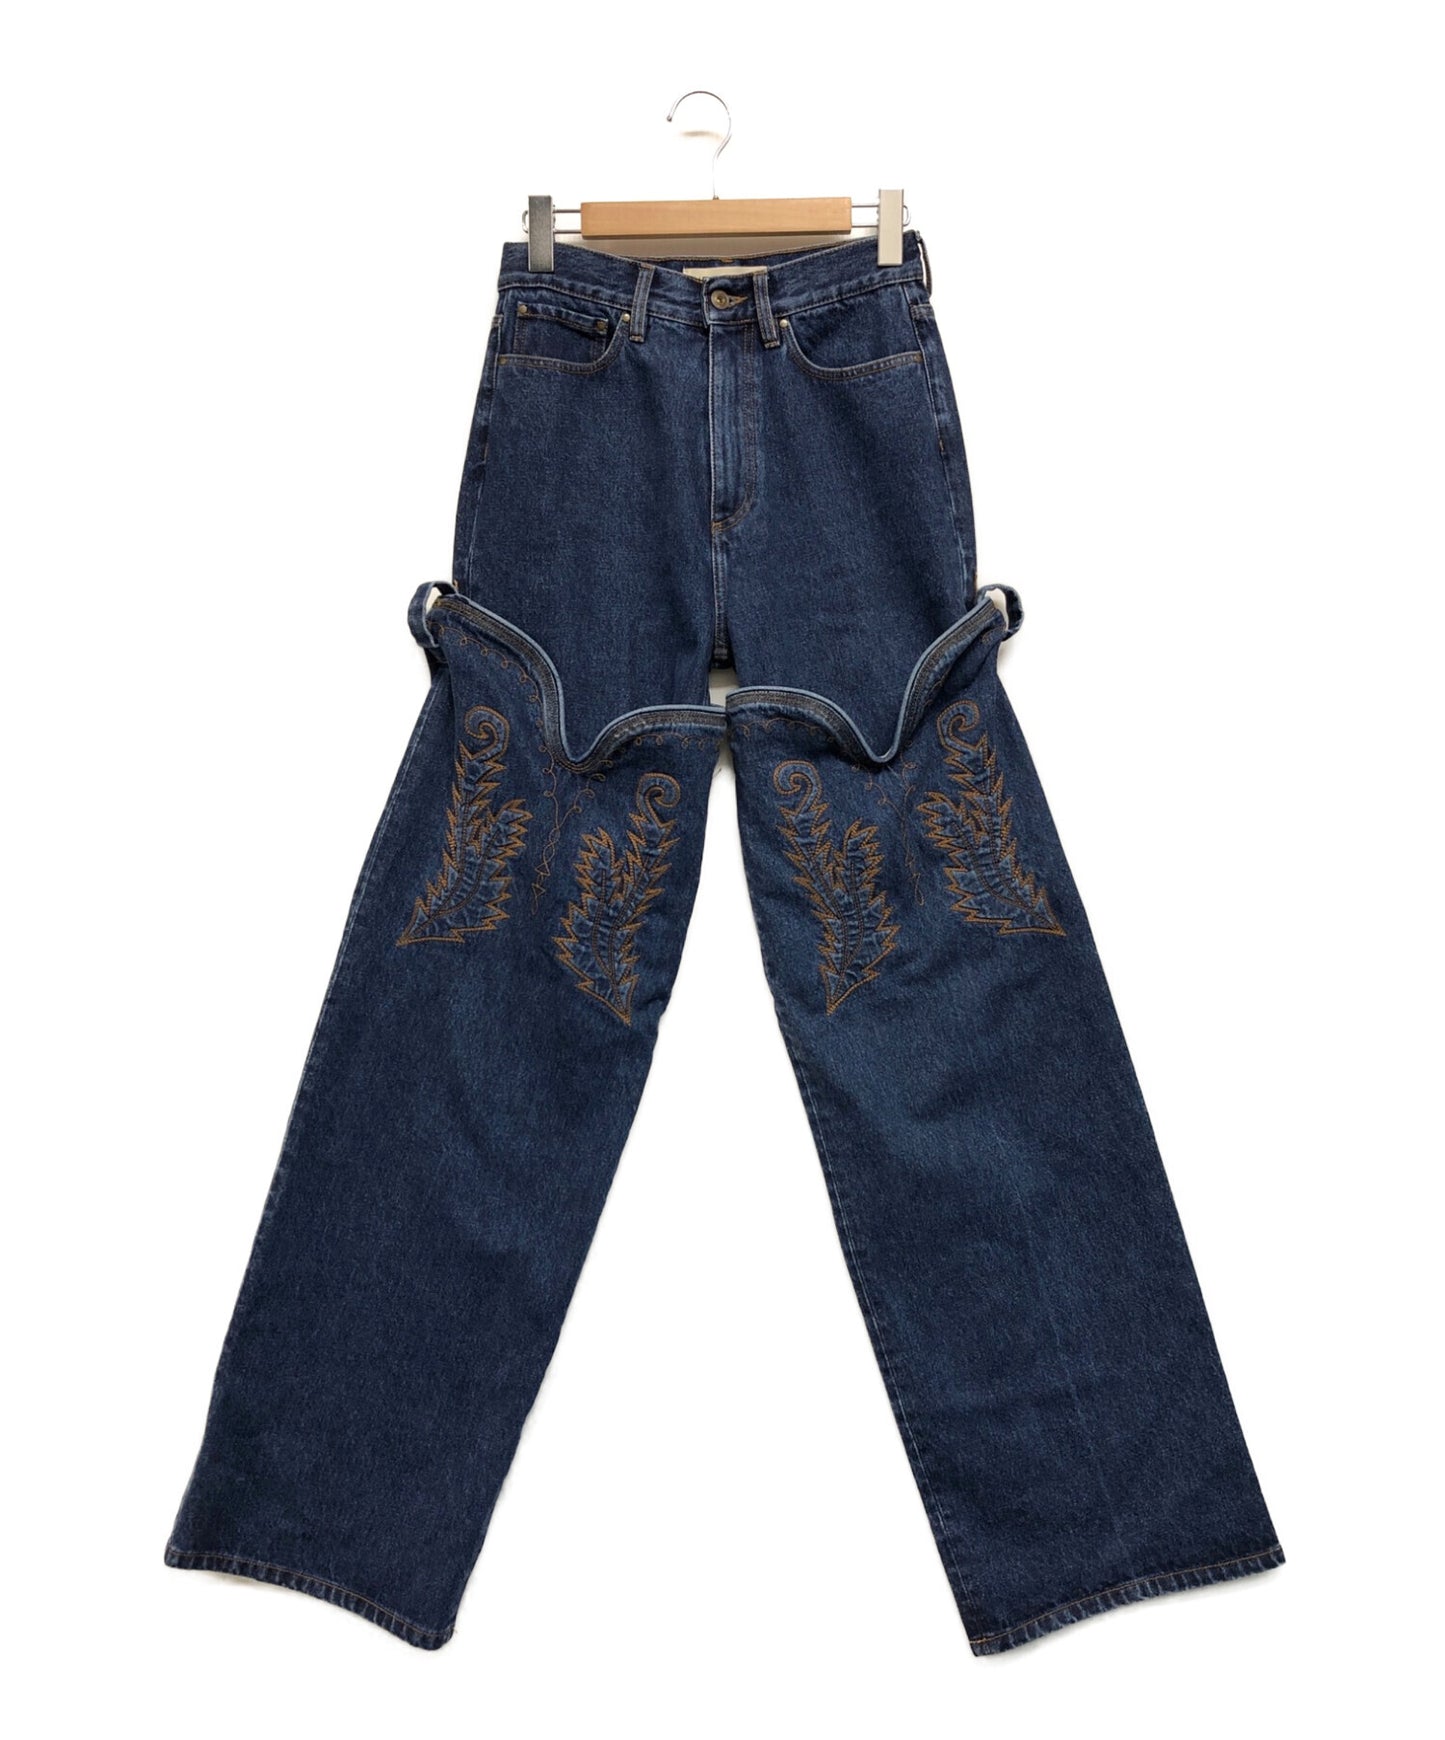 Y. PROJECT Logo Detail Cowboy Cuffs Jeans/Denim Pants/Jeans/Chaps 